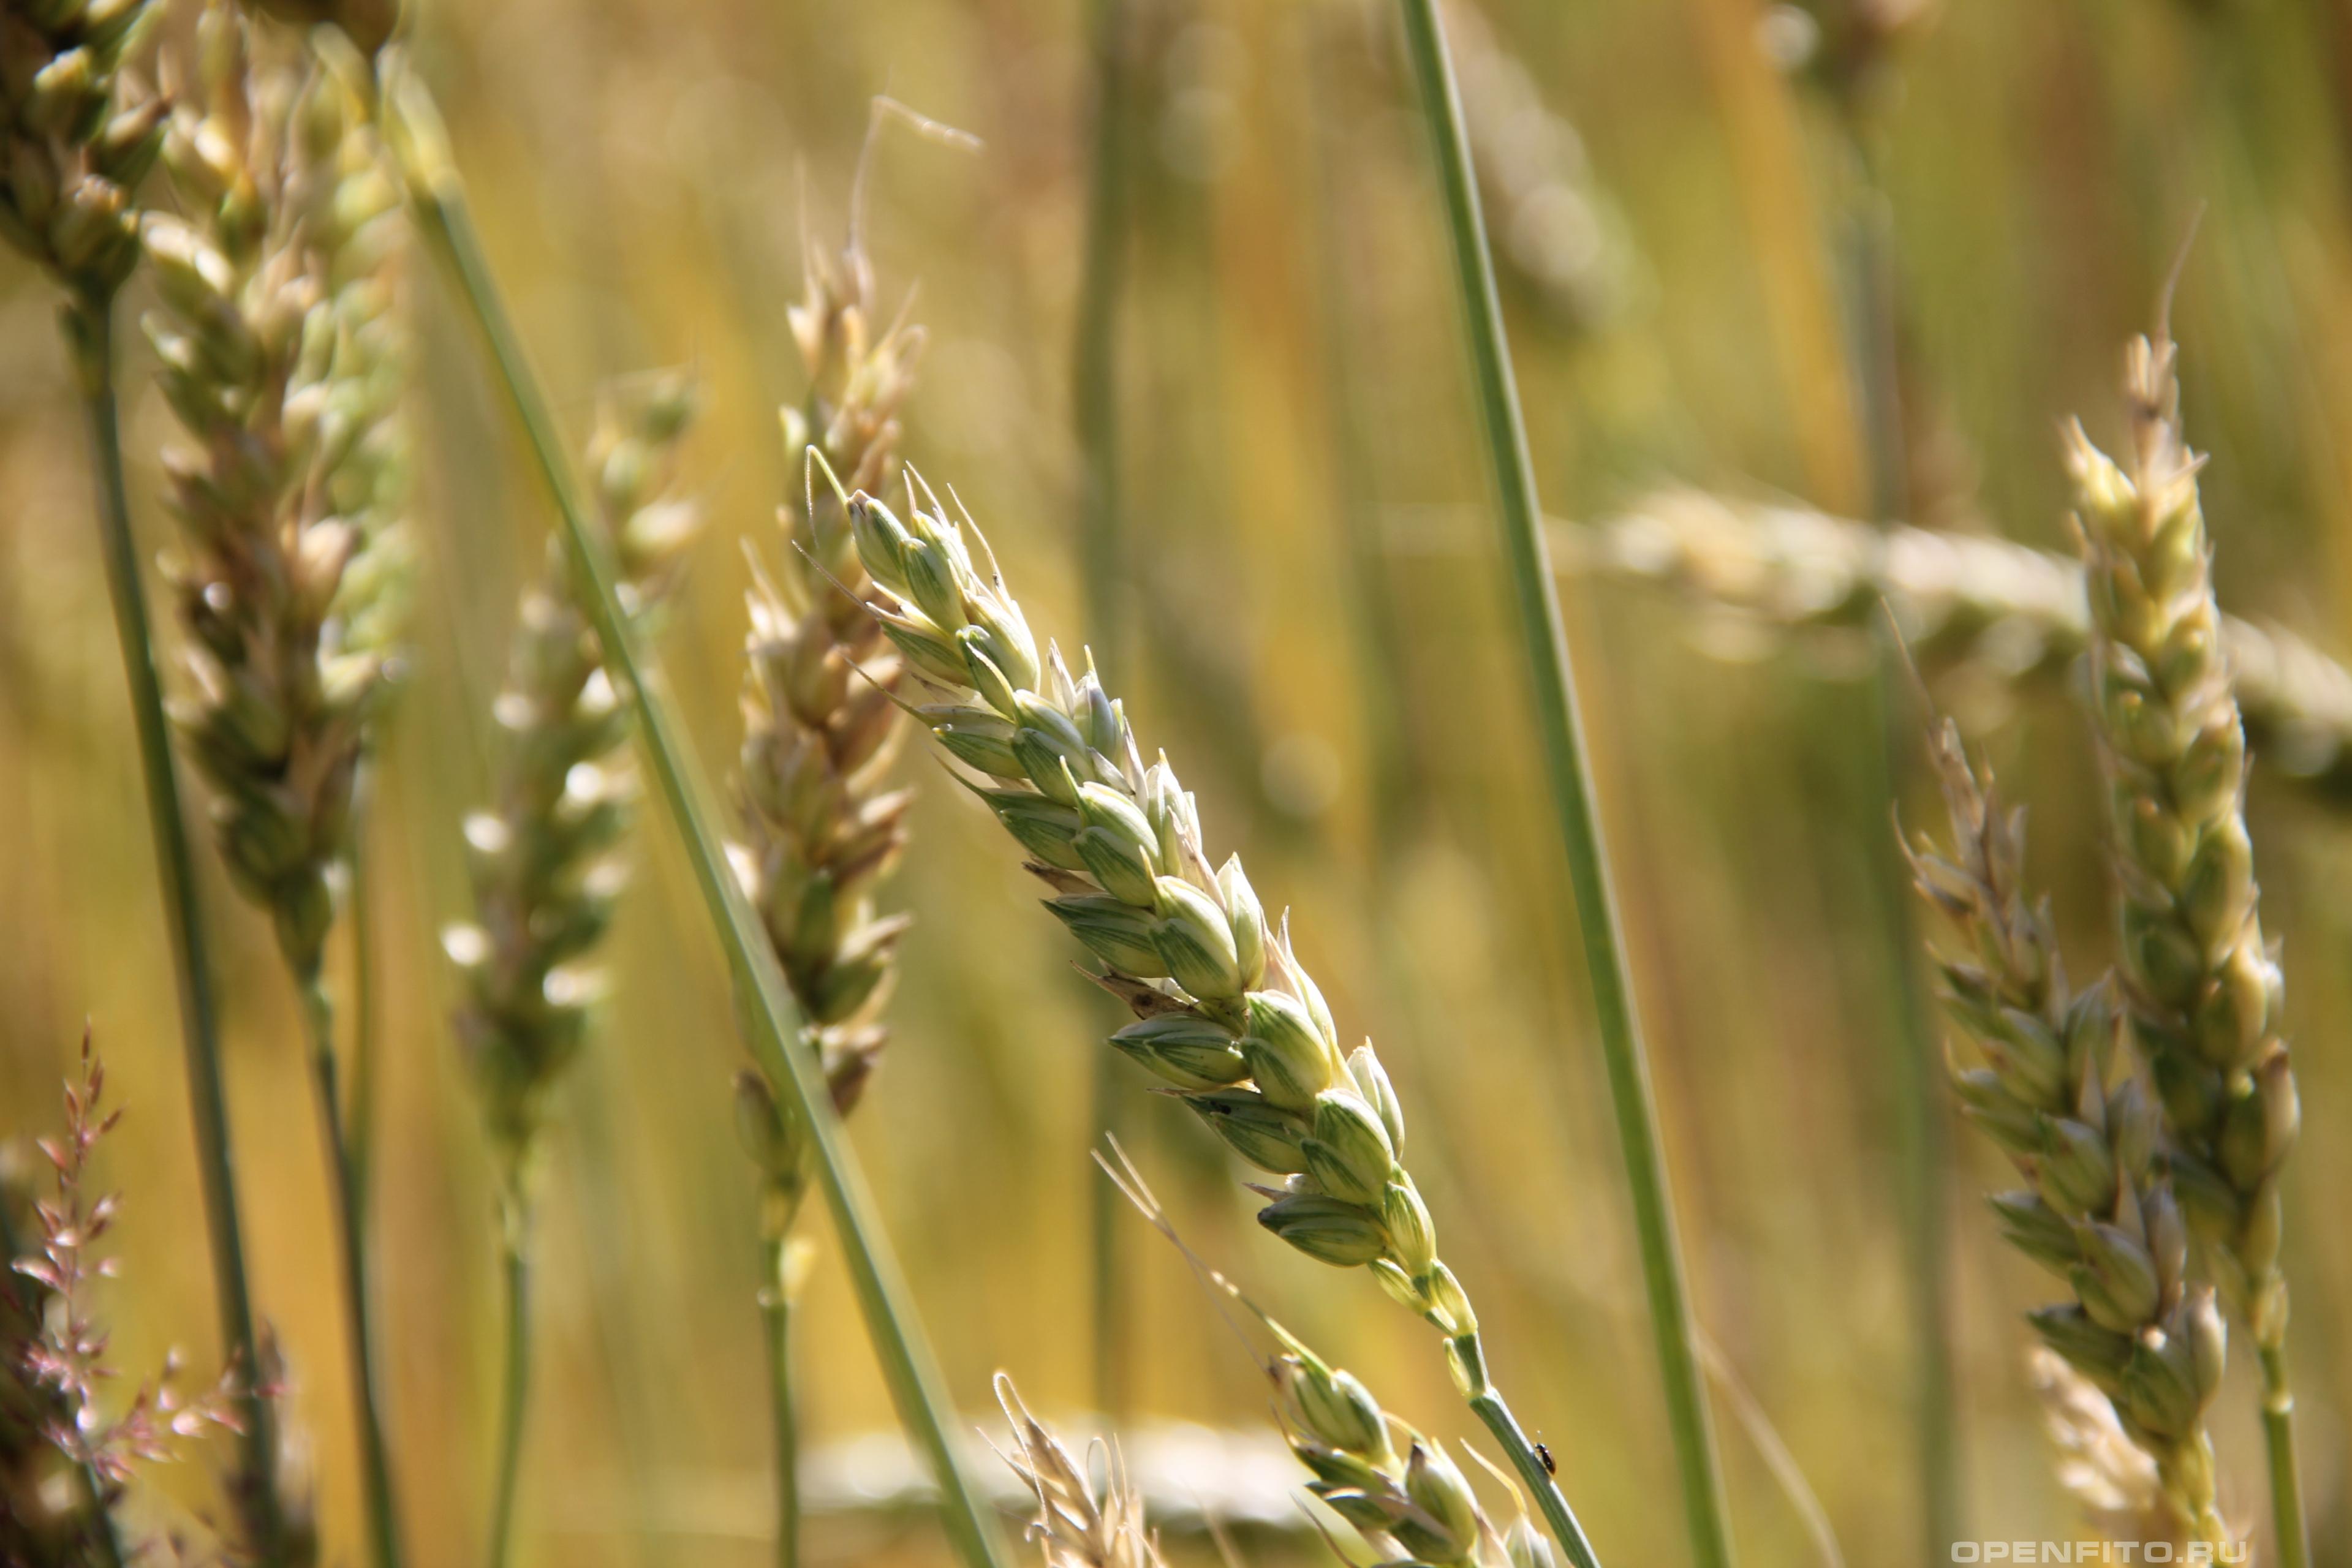 Пшеница мягкая незрелый колос